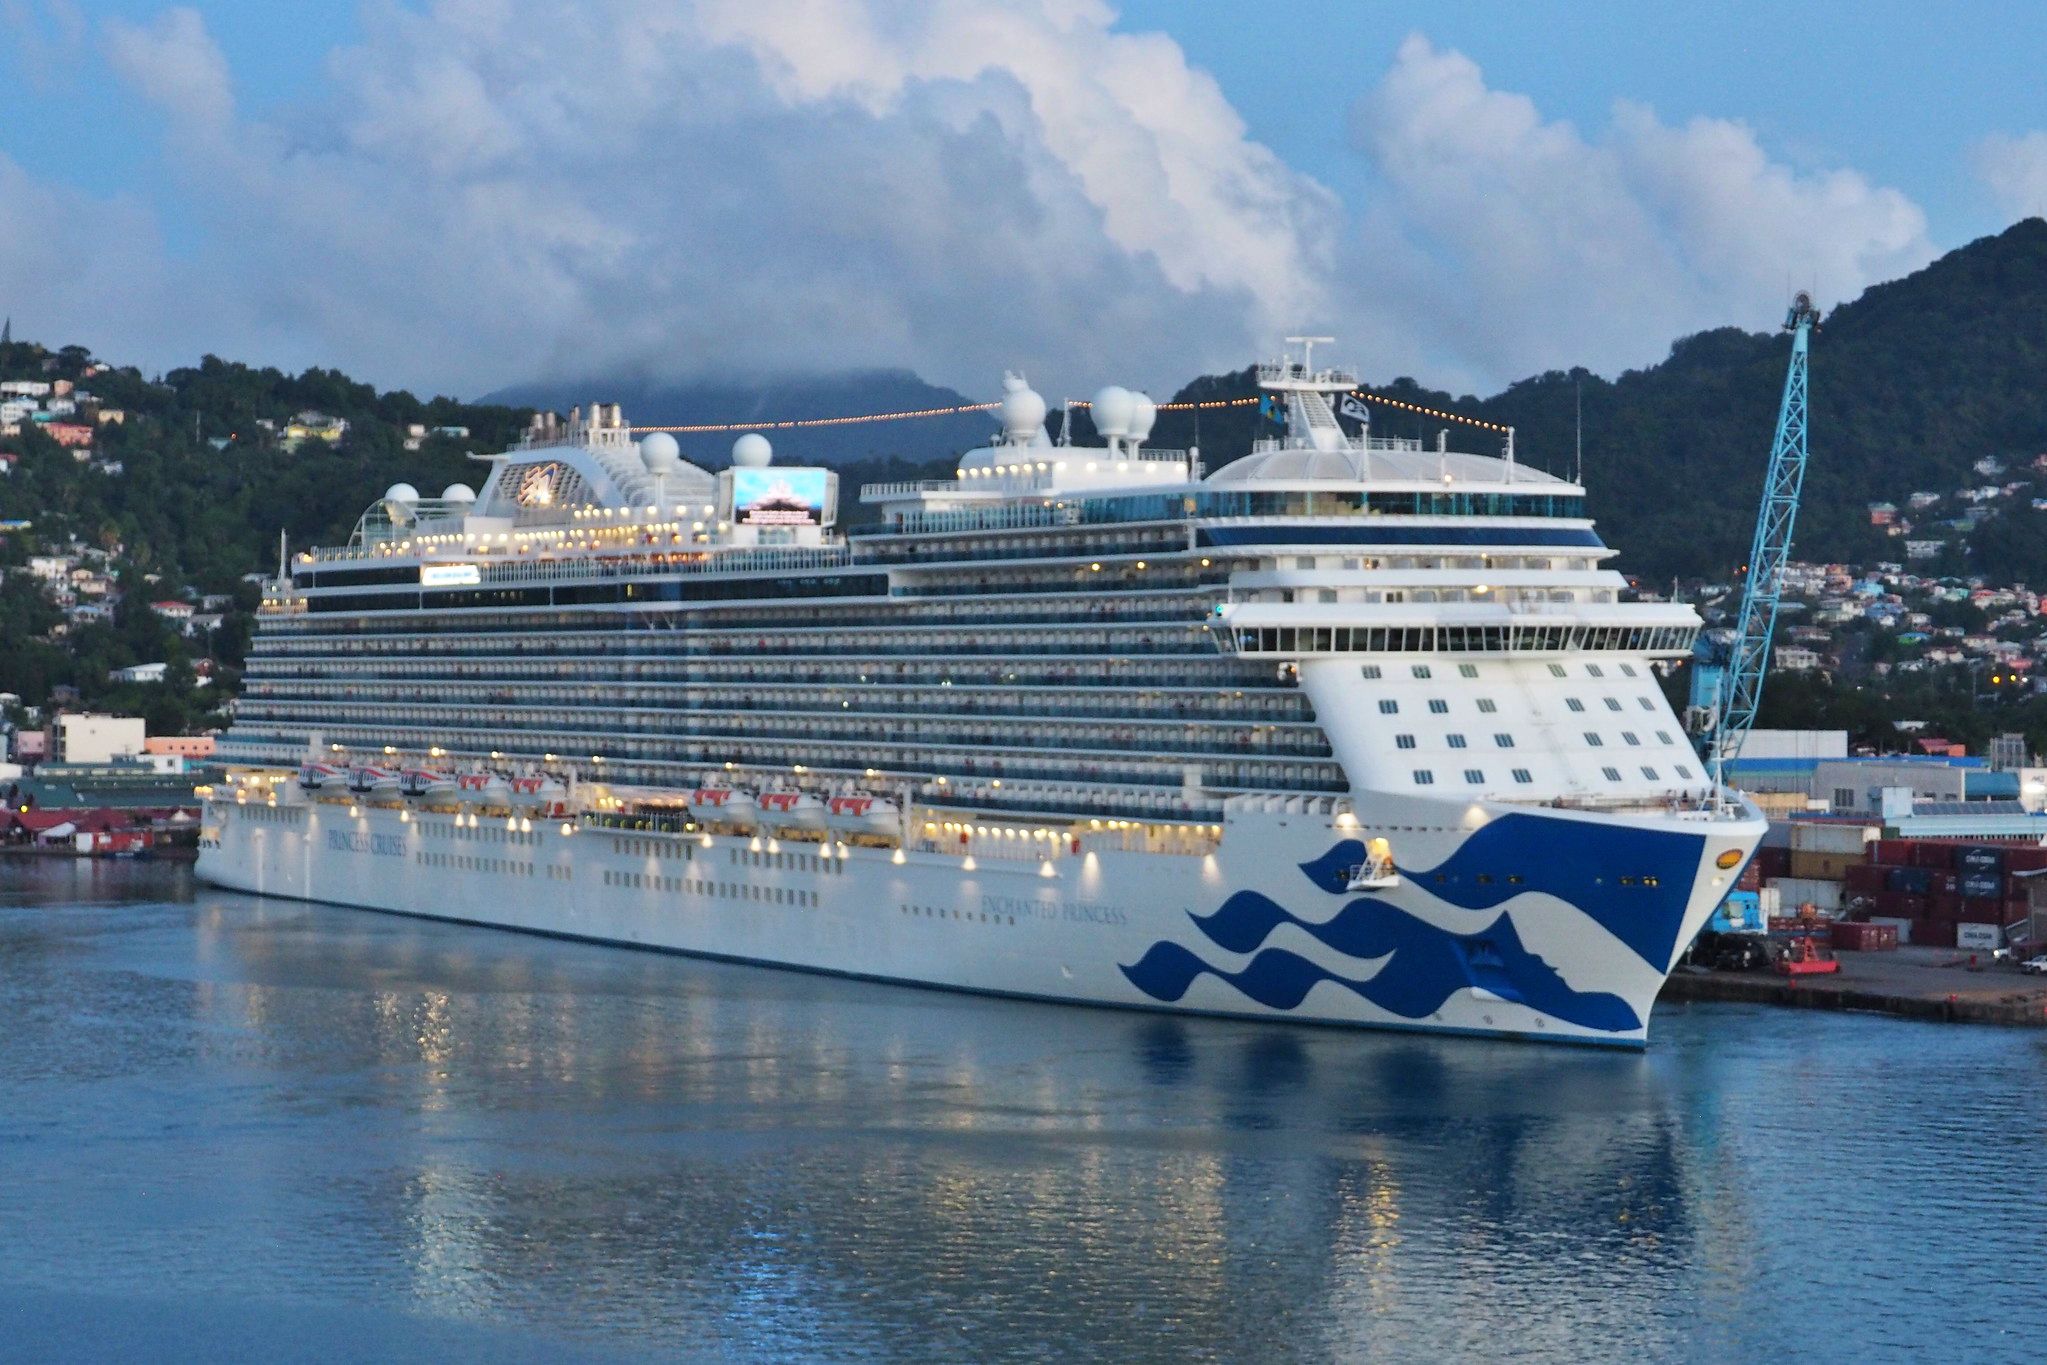 Princess Cruises - Enchanted Princess on a Love Boat VIP package